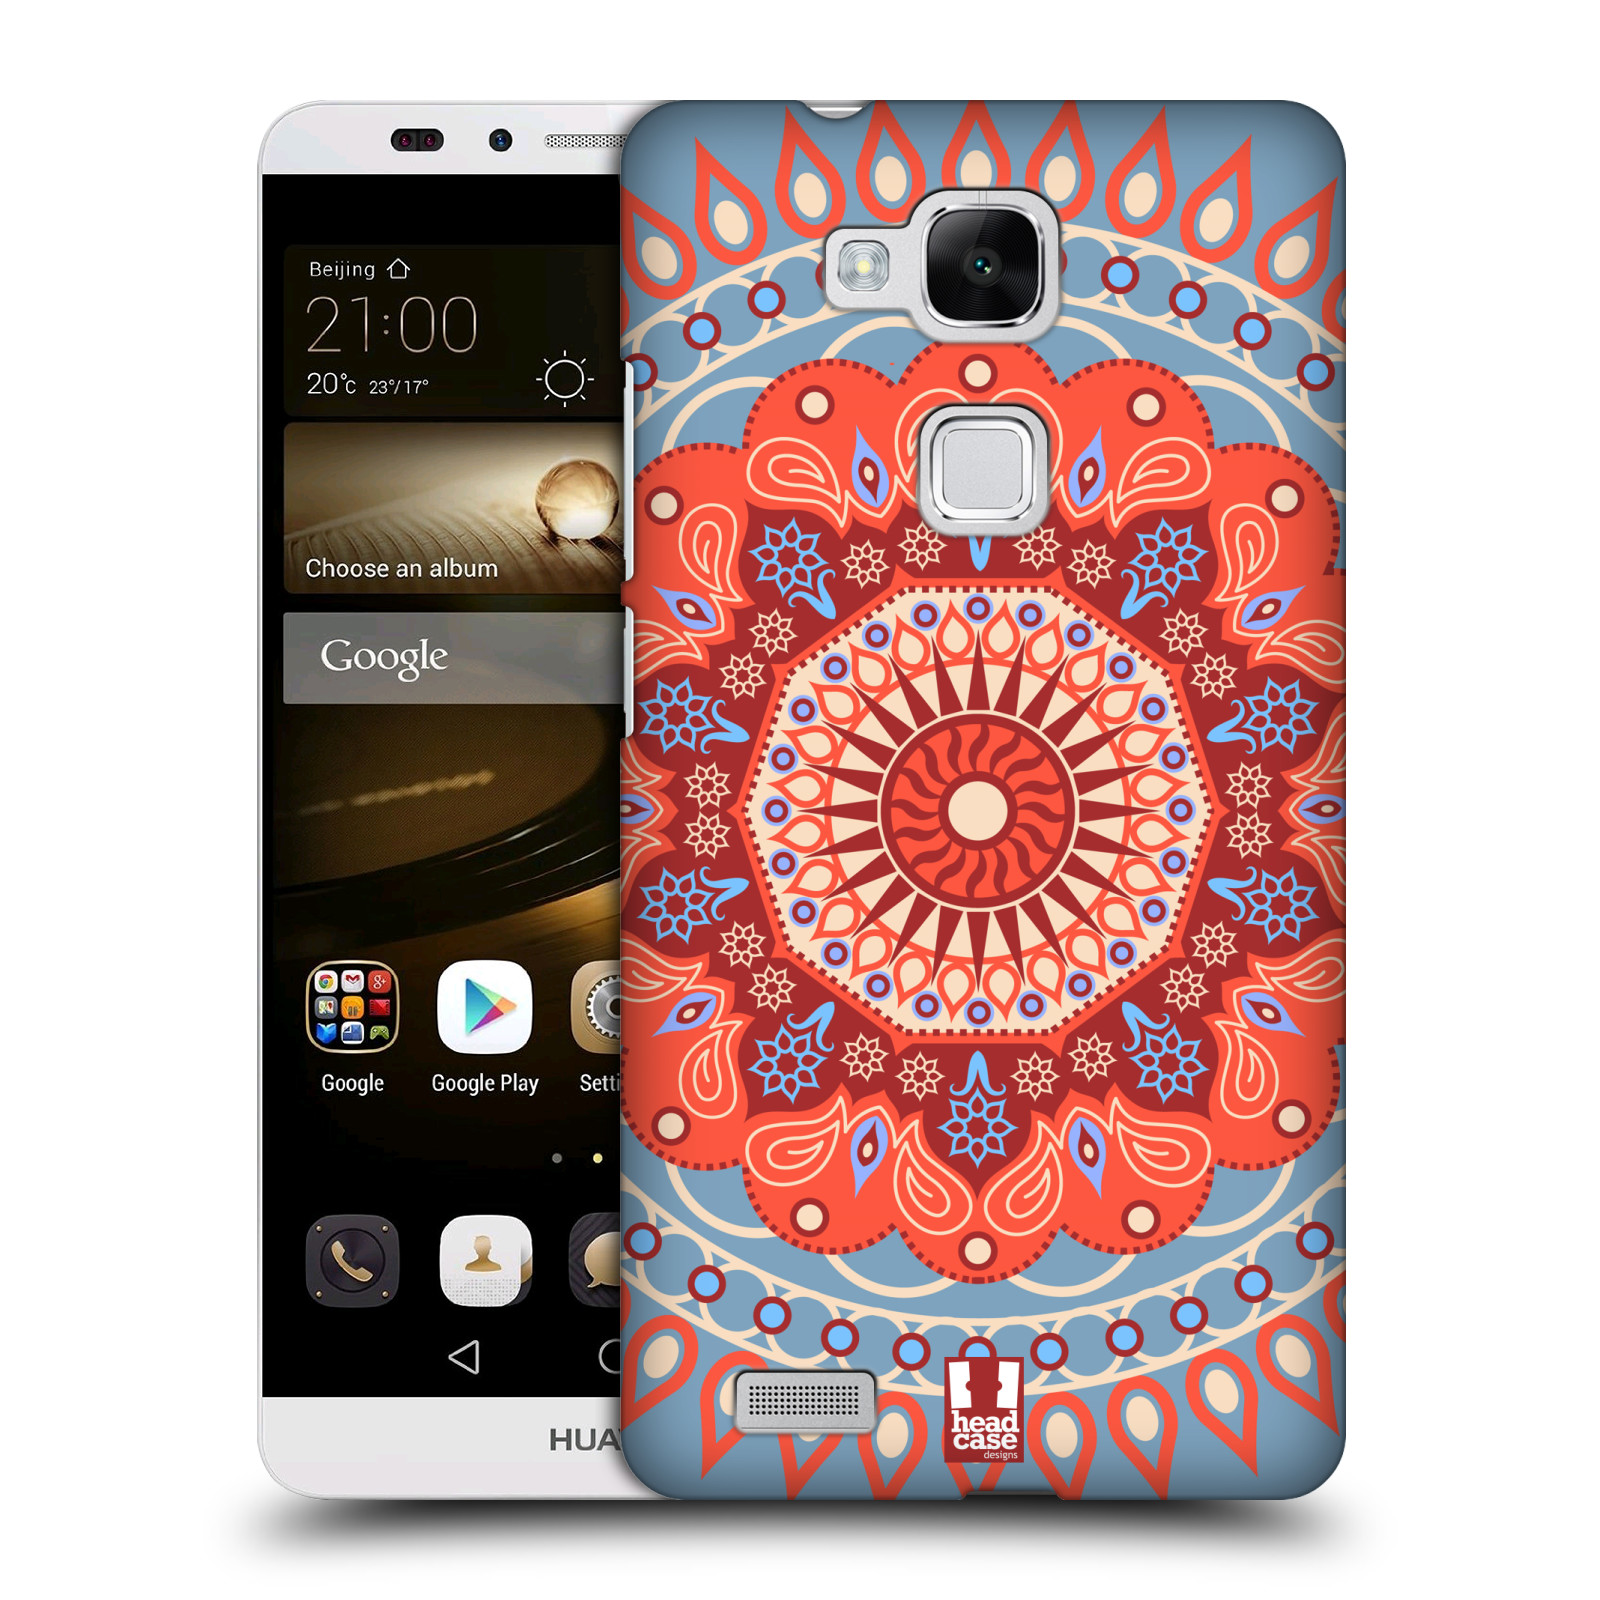 HEAD CASE plastový obal na mobil Huawei Mate 7 vzor Indie Mandala slunce barevný motiv ČERVENÁ A MODRÁ